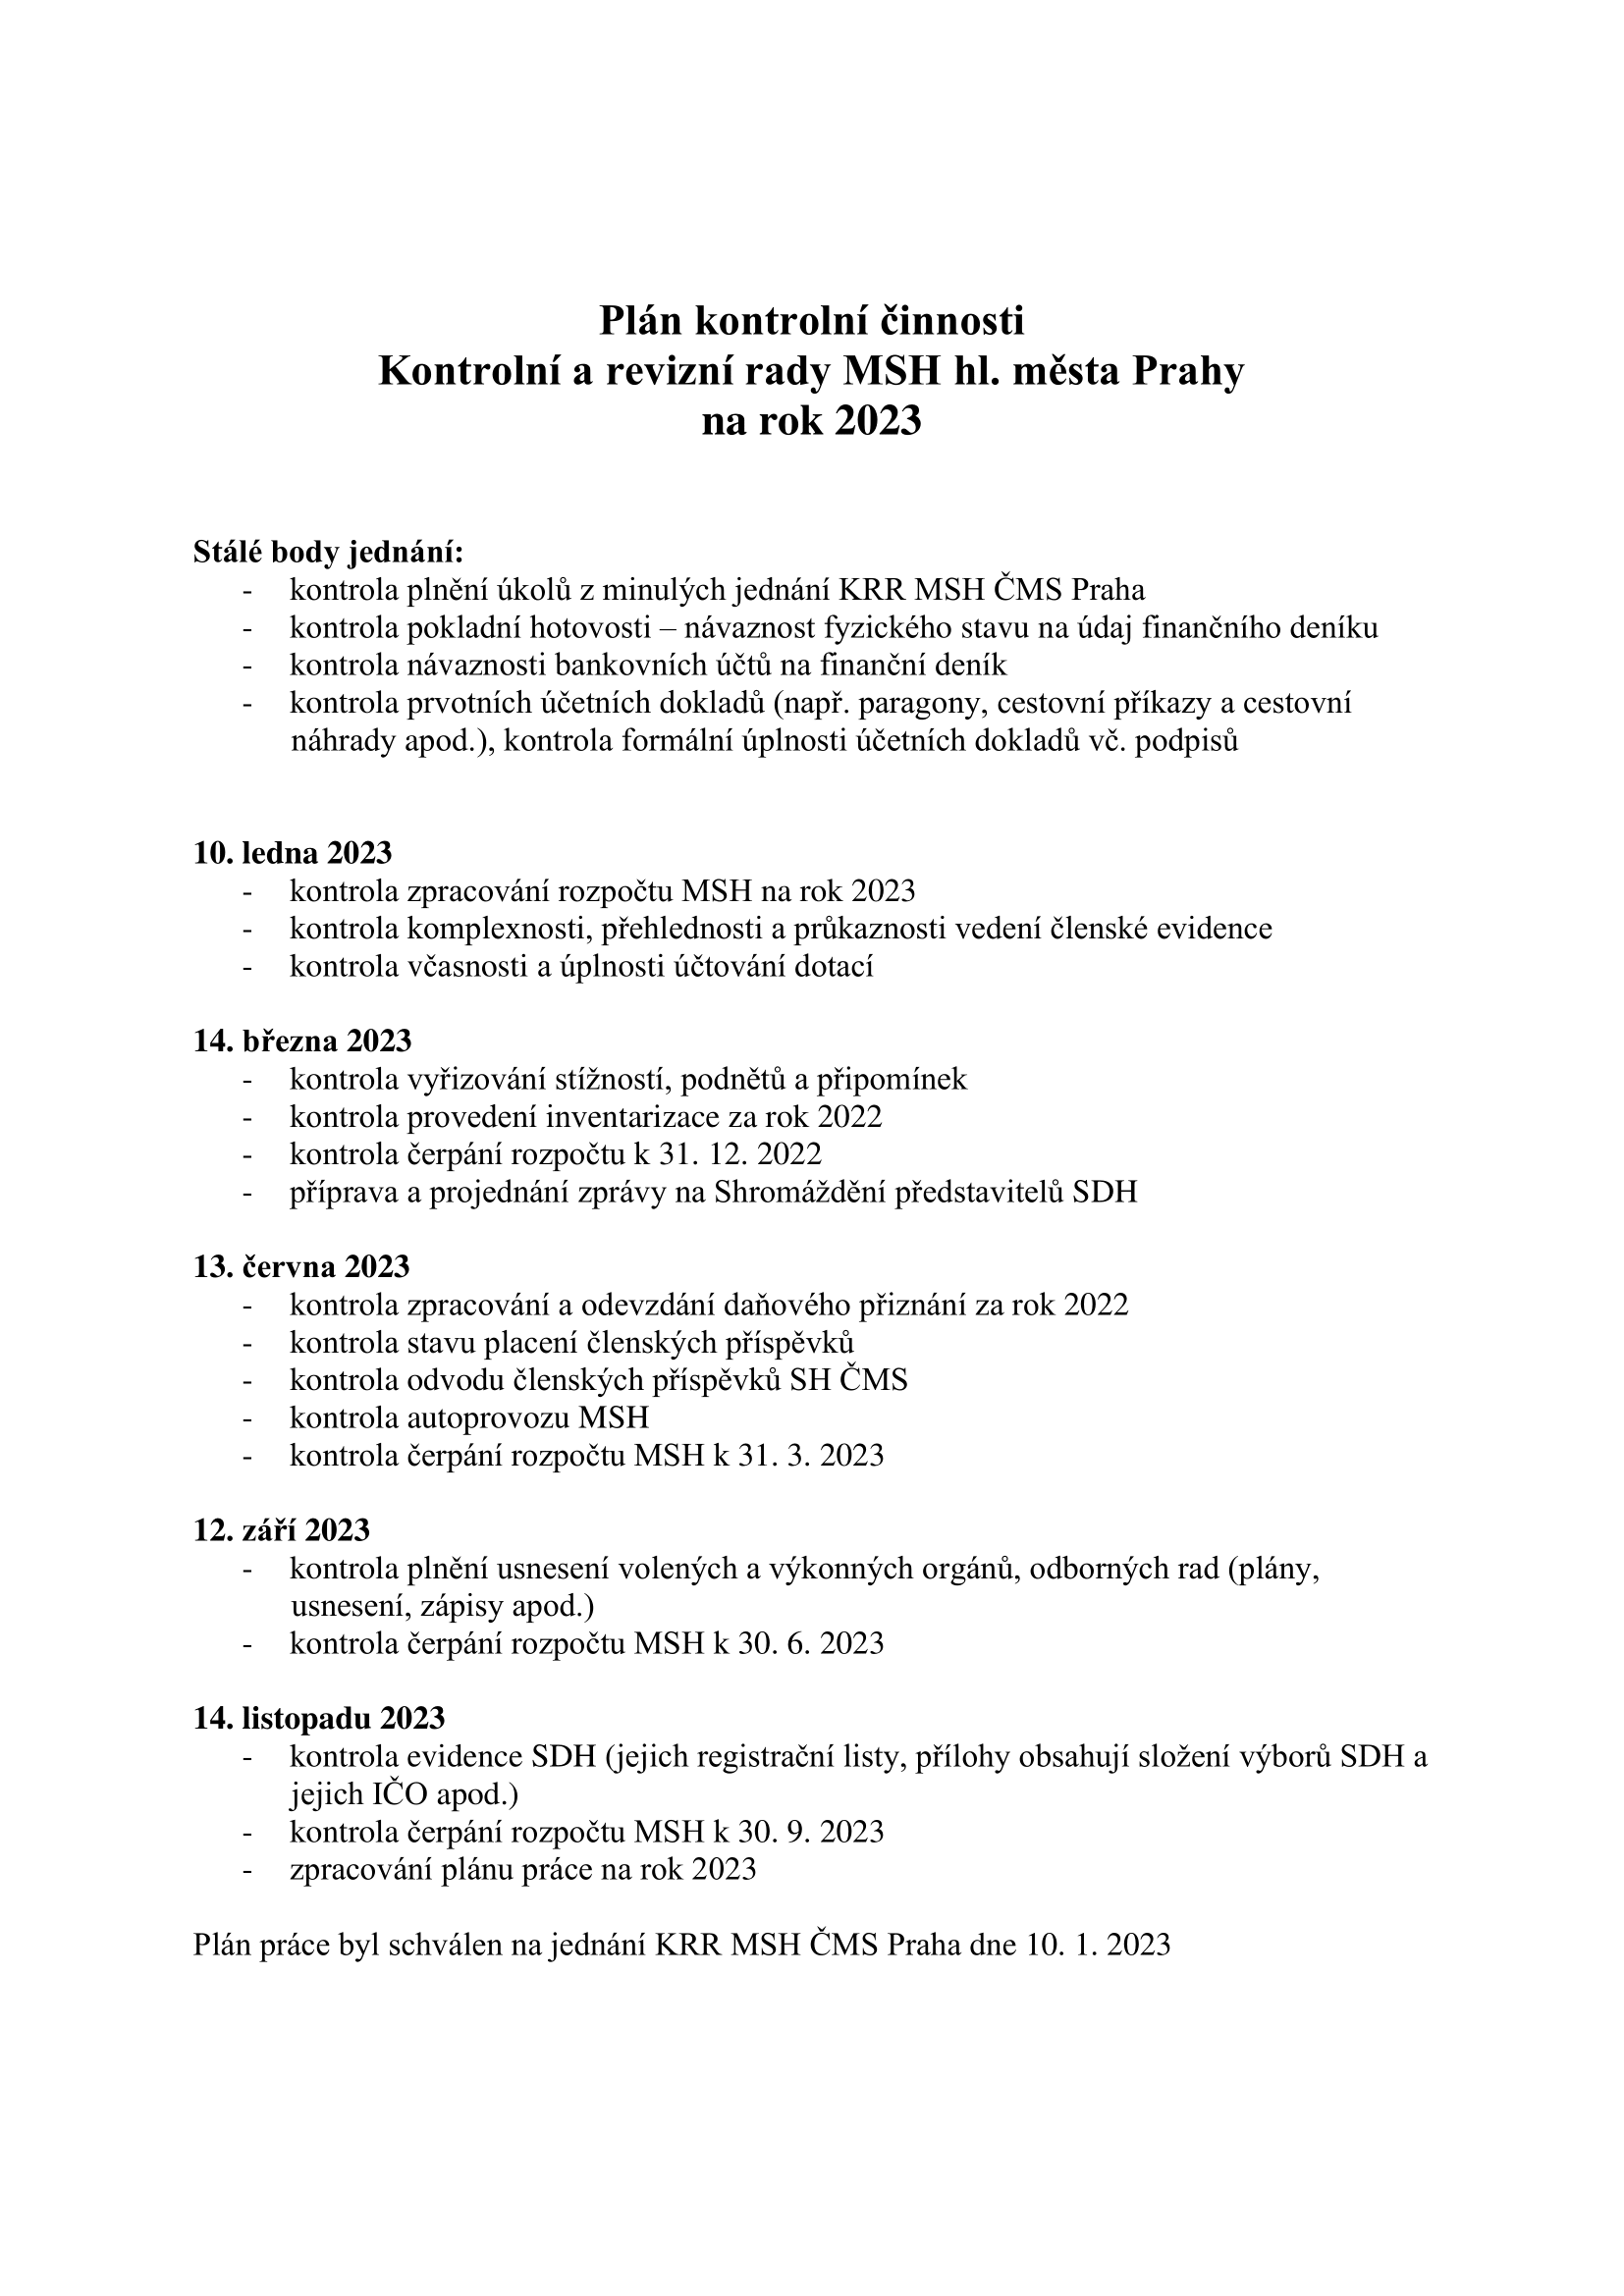 Plán kontrolní činnosti KRR Praha 2023 1